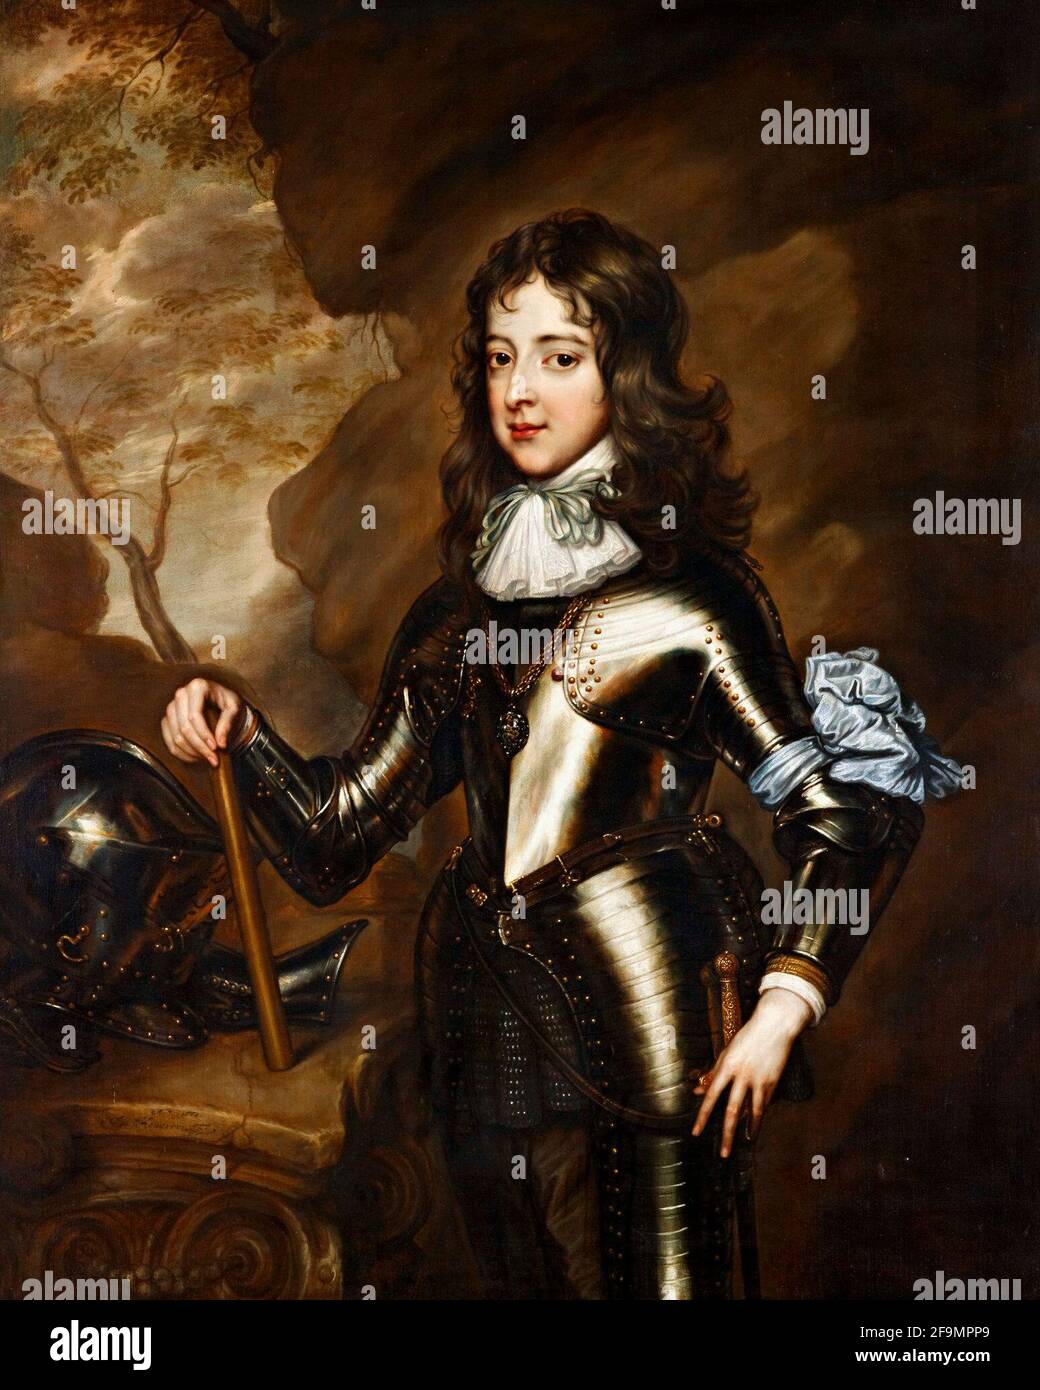 William III, Prince of Orange when a child - Adriaen Hanneman, 1664 Stock Photo